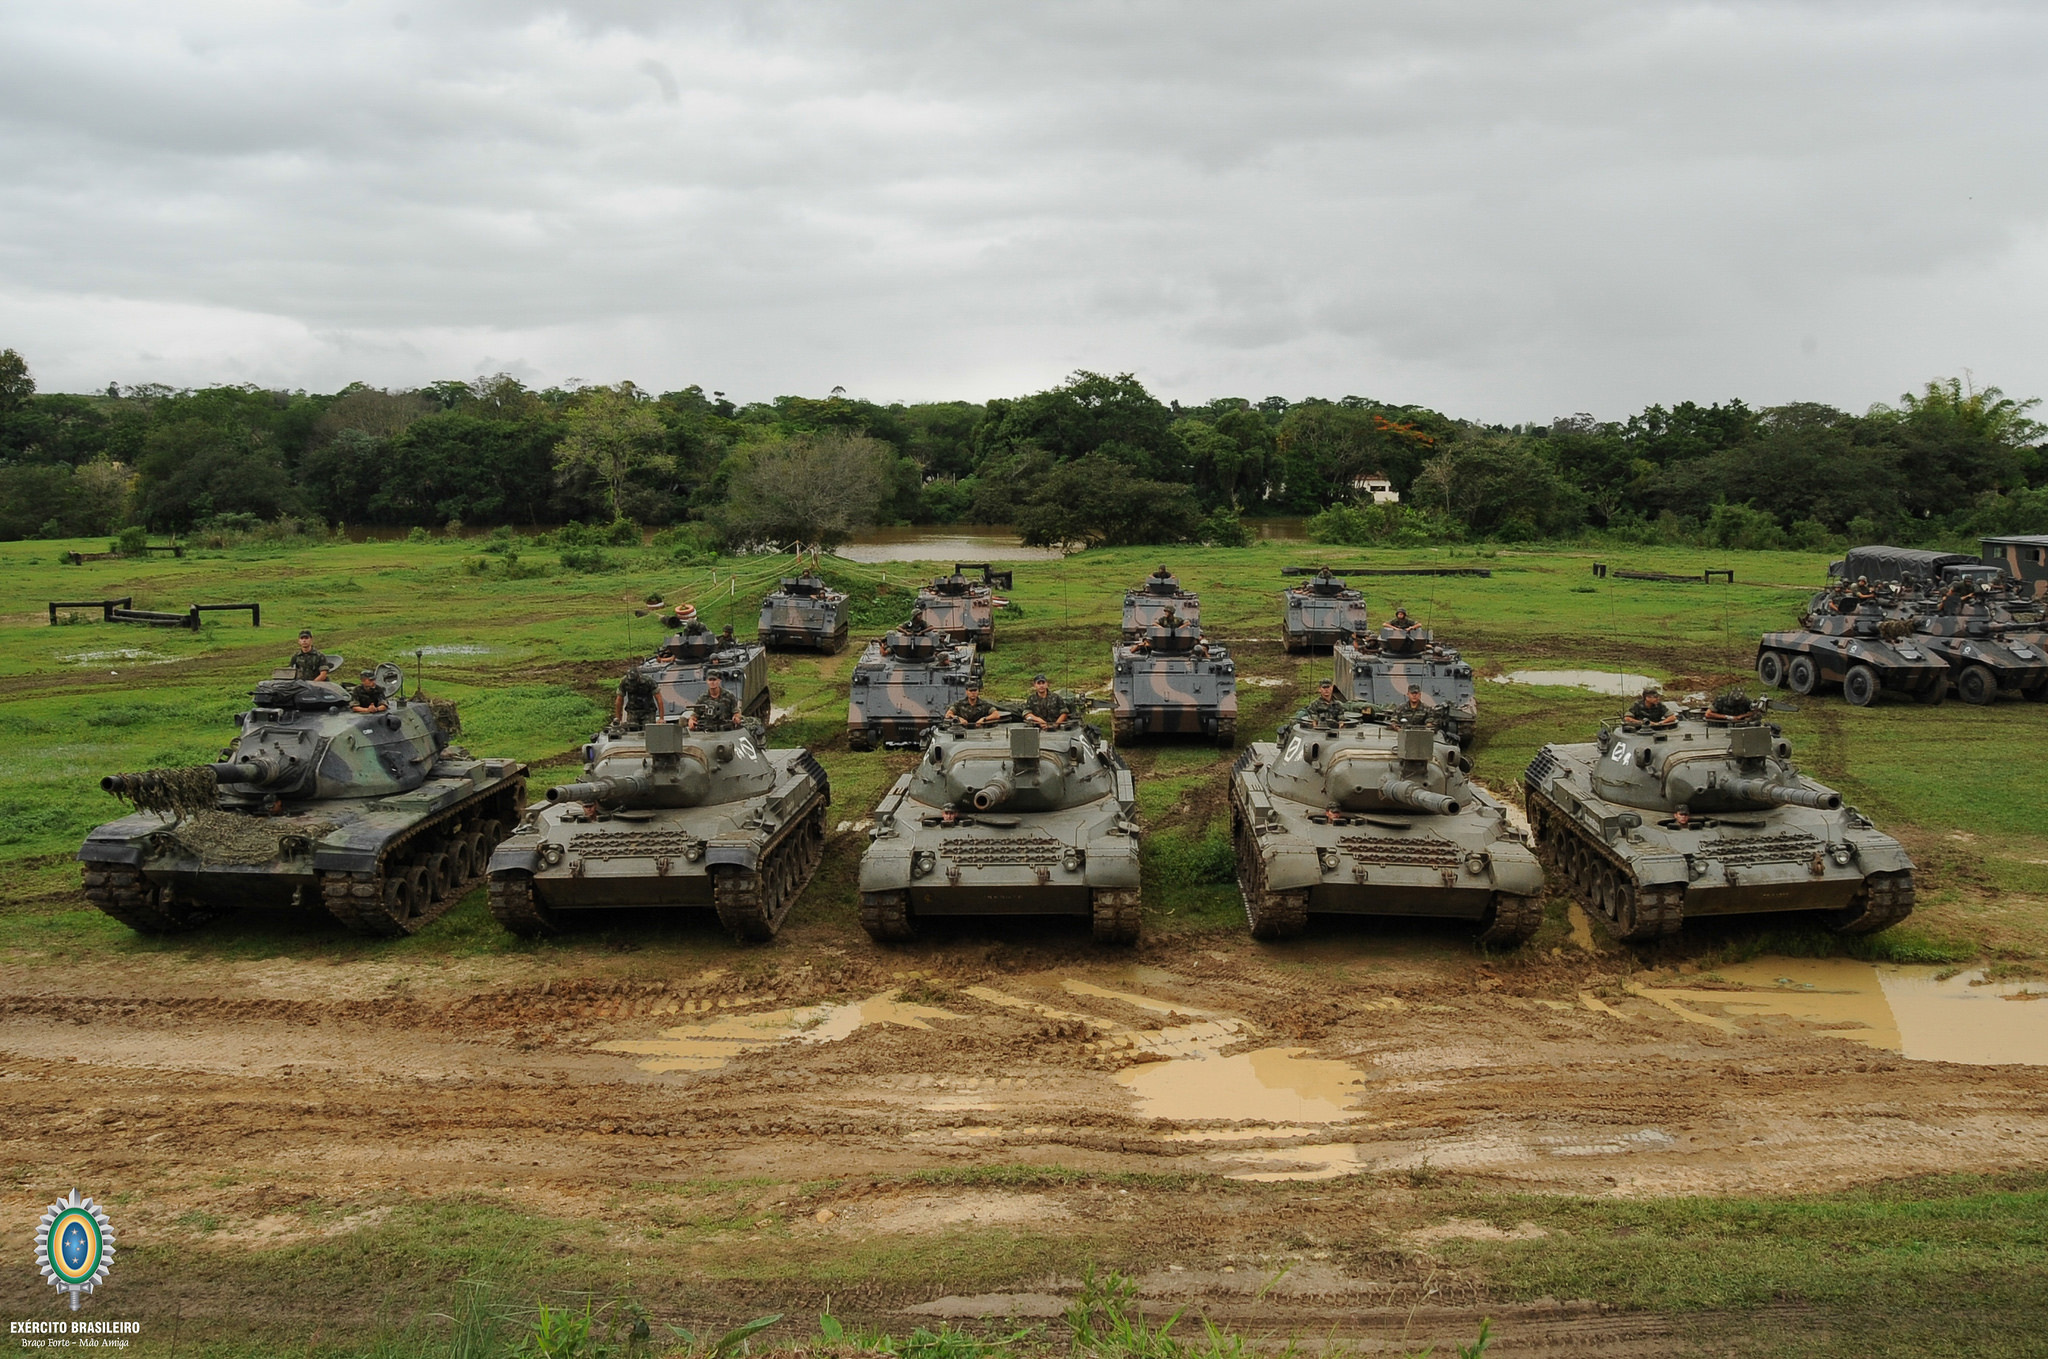 Veículos do Exército exibiram bandeira vermelha e branca da cavalaria, não  de Cuba